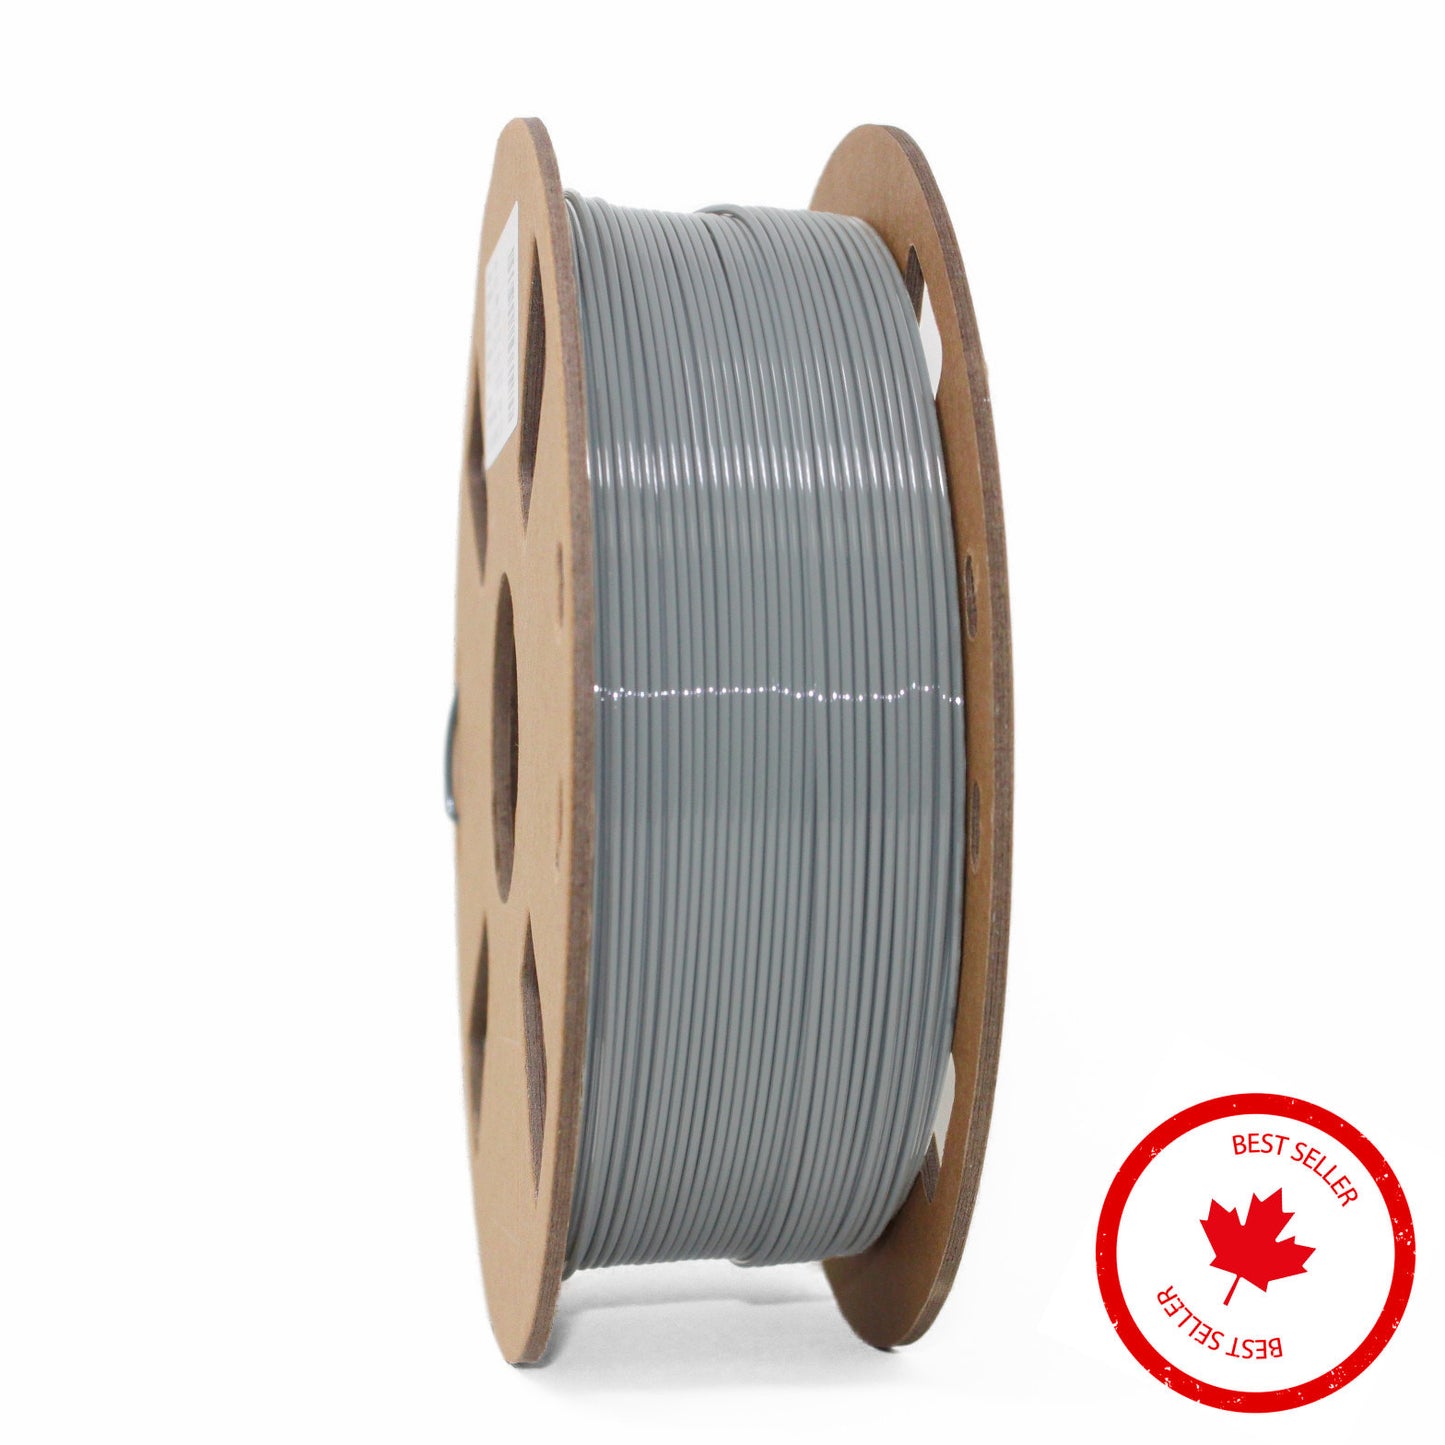 ASA UV resistant 3D printer filament Canada